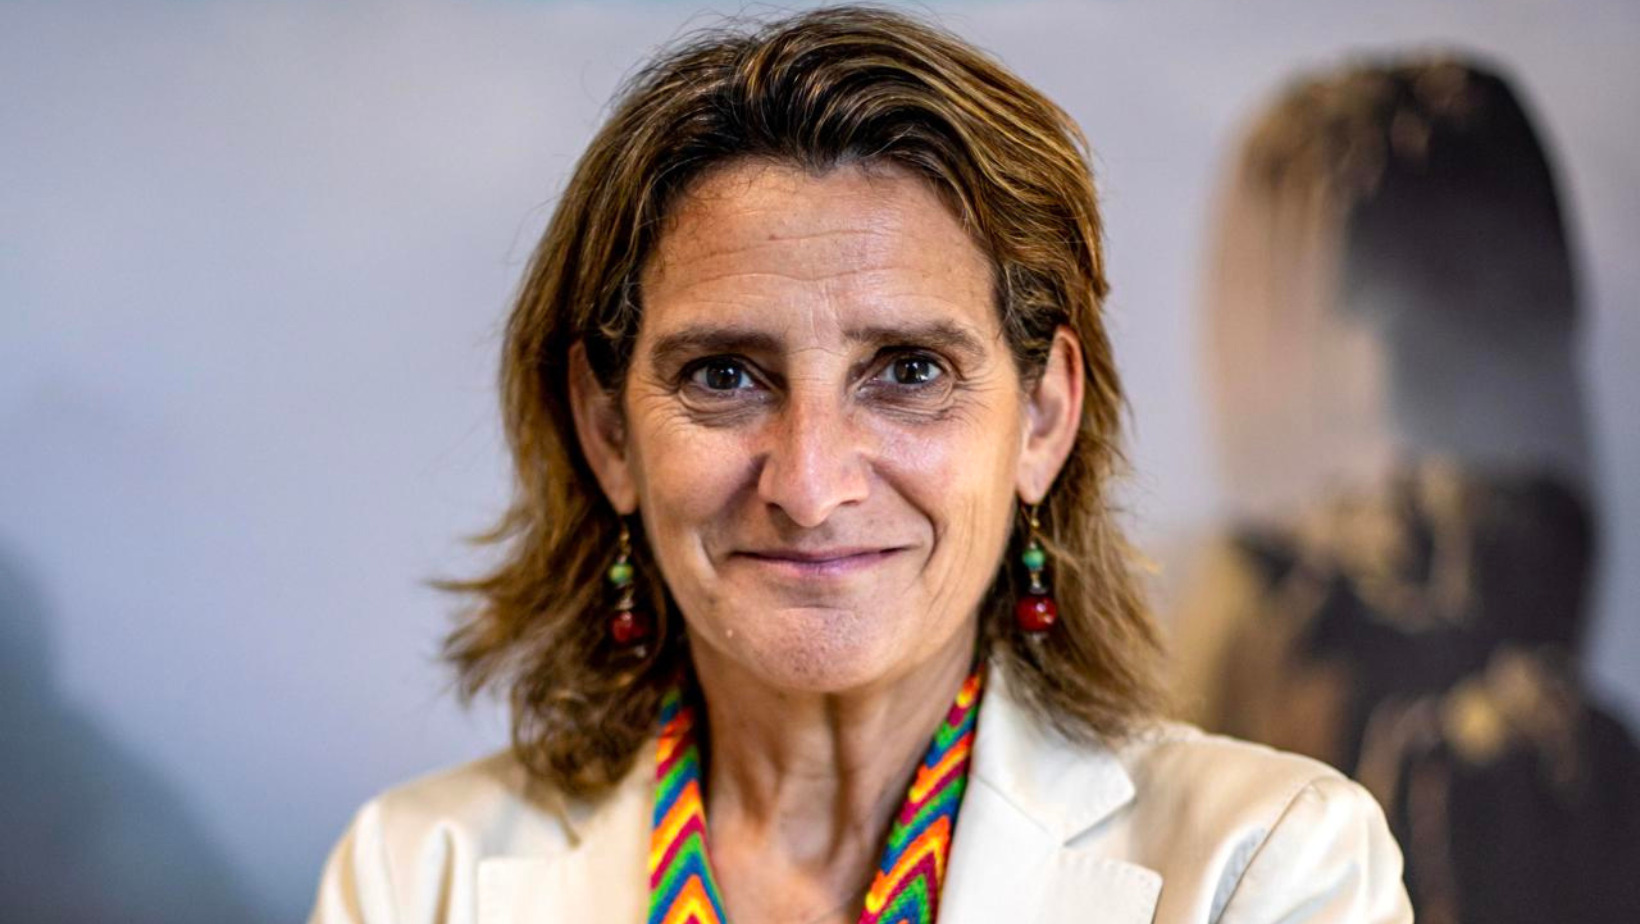 La ministra para la Transición Ecológica de España, Teresa Ribera. Foto: fuente externa.